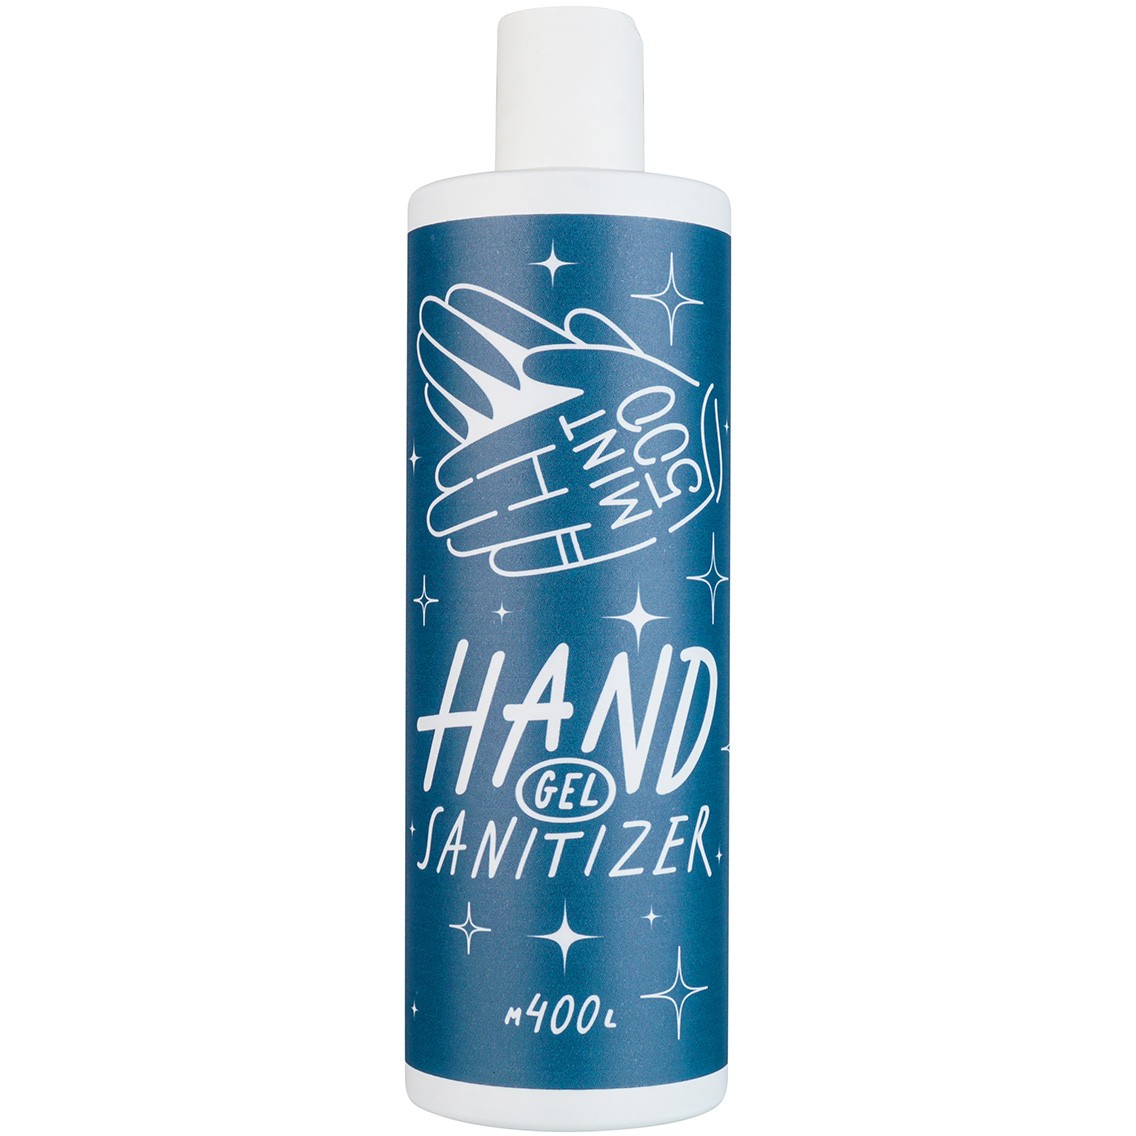 Mint500 Hand Sanitizer Gel - Антибактериальный гель для рук с запахом ванили, 400 мл - фото 1